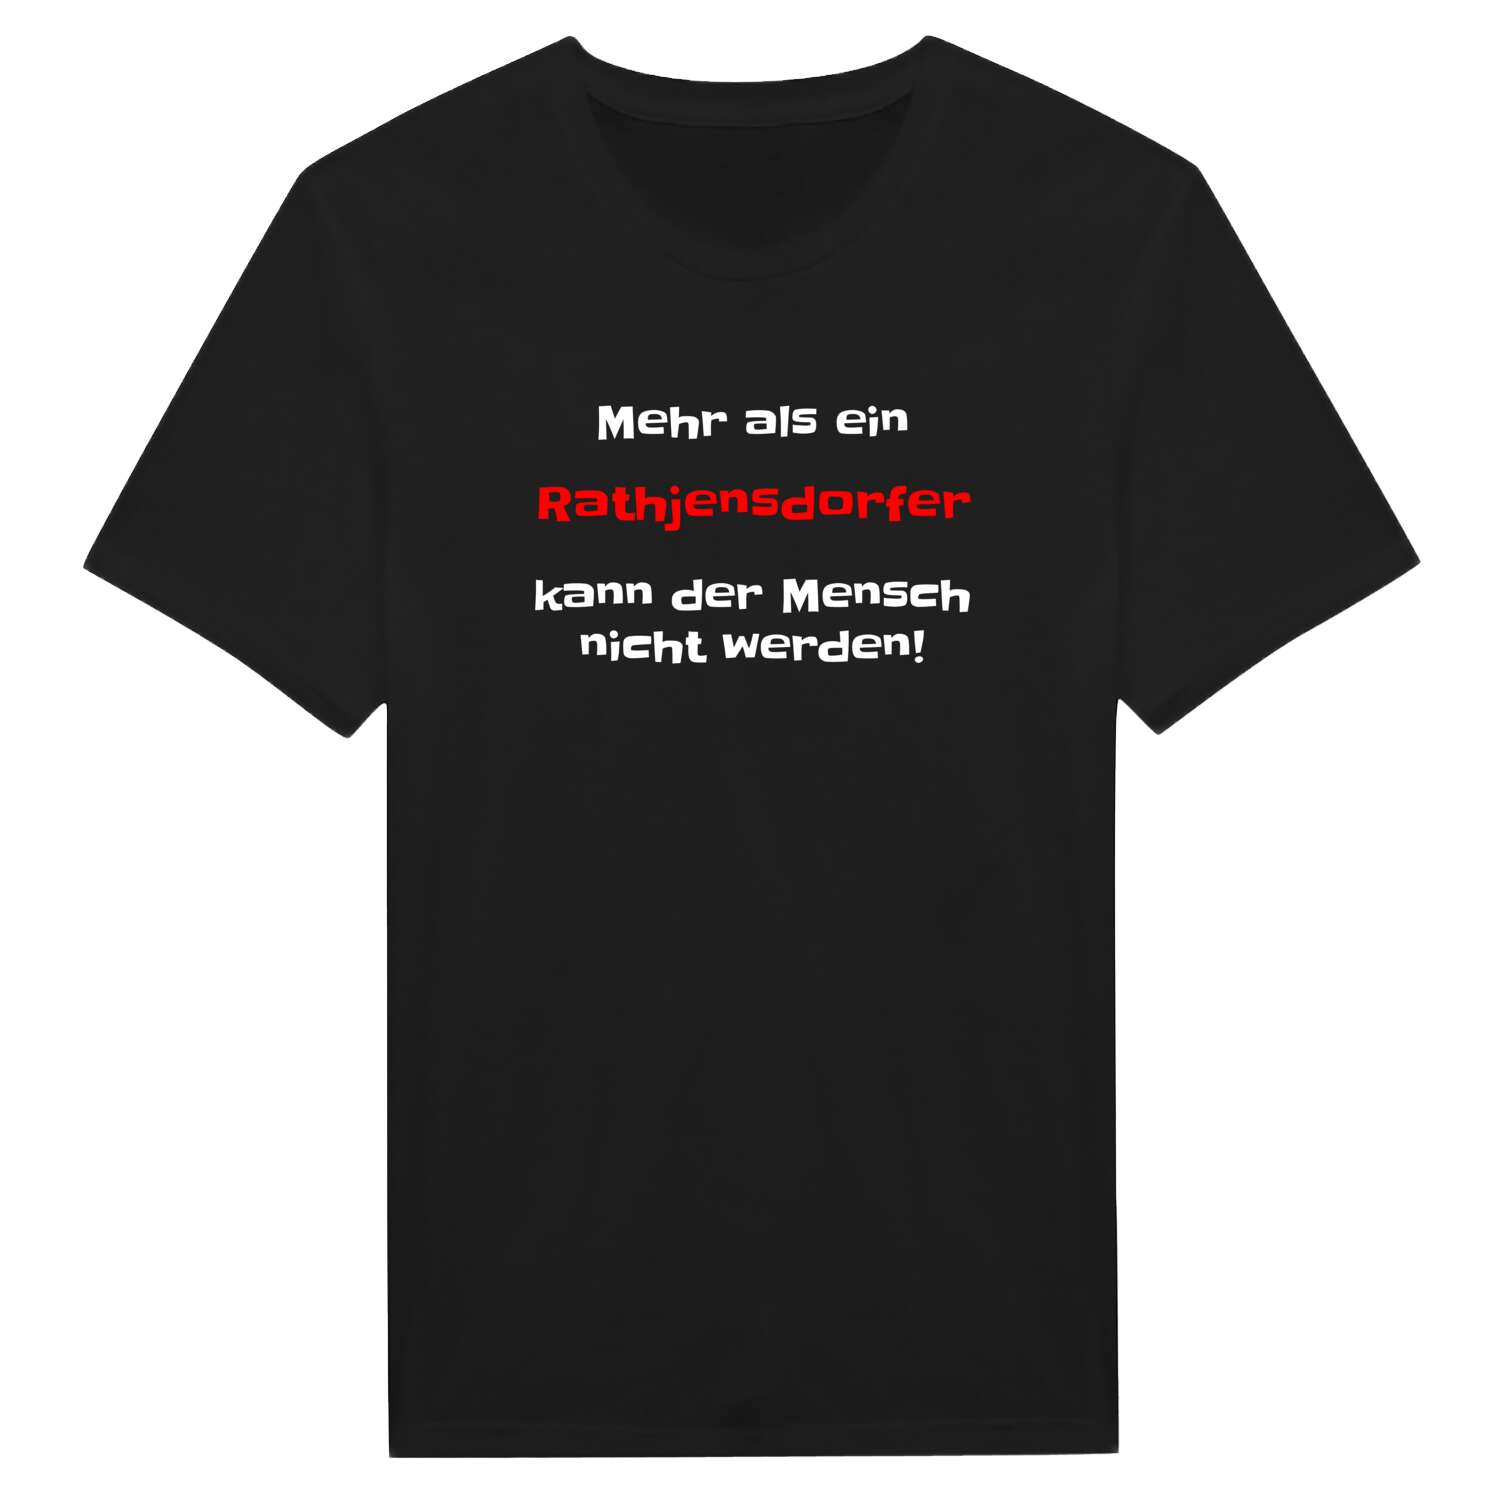 Rathjensdorf T-Shirt »Mehr als ein«